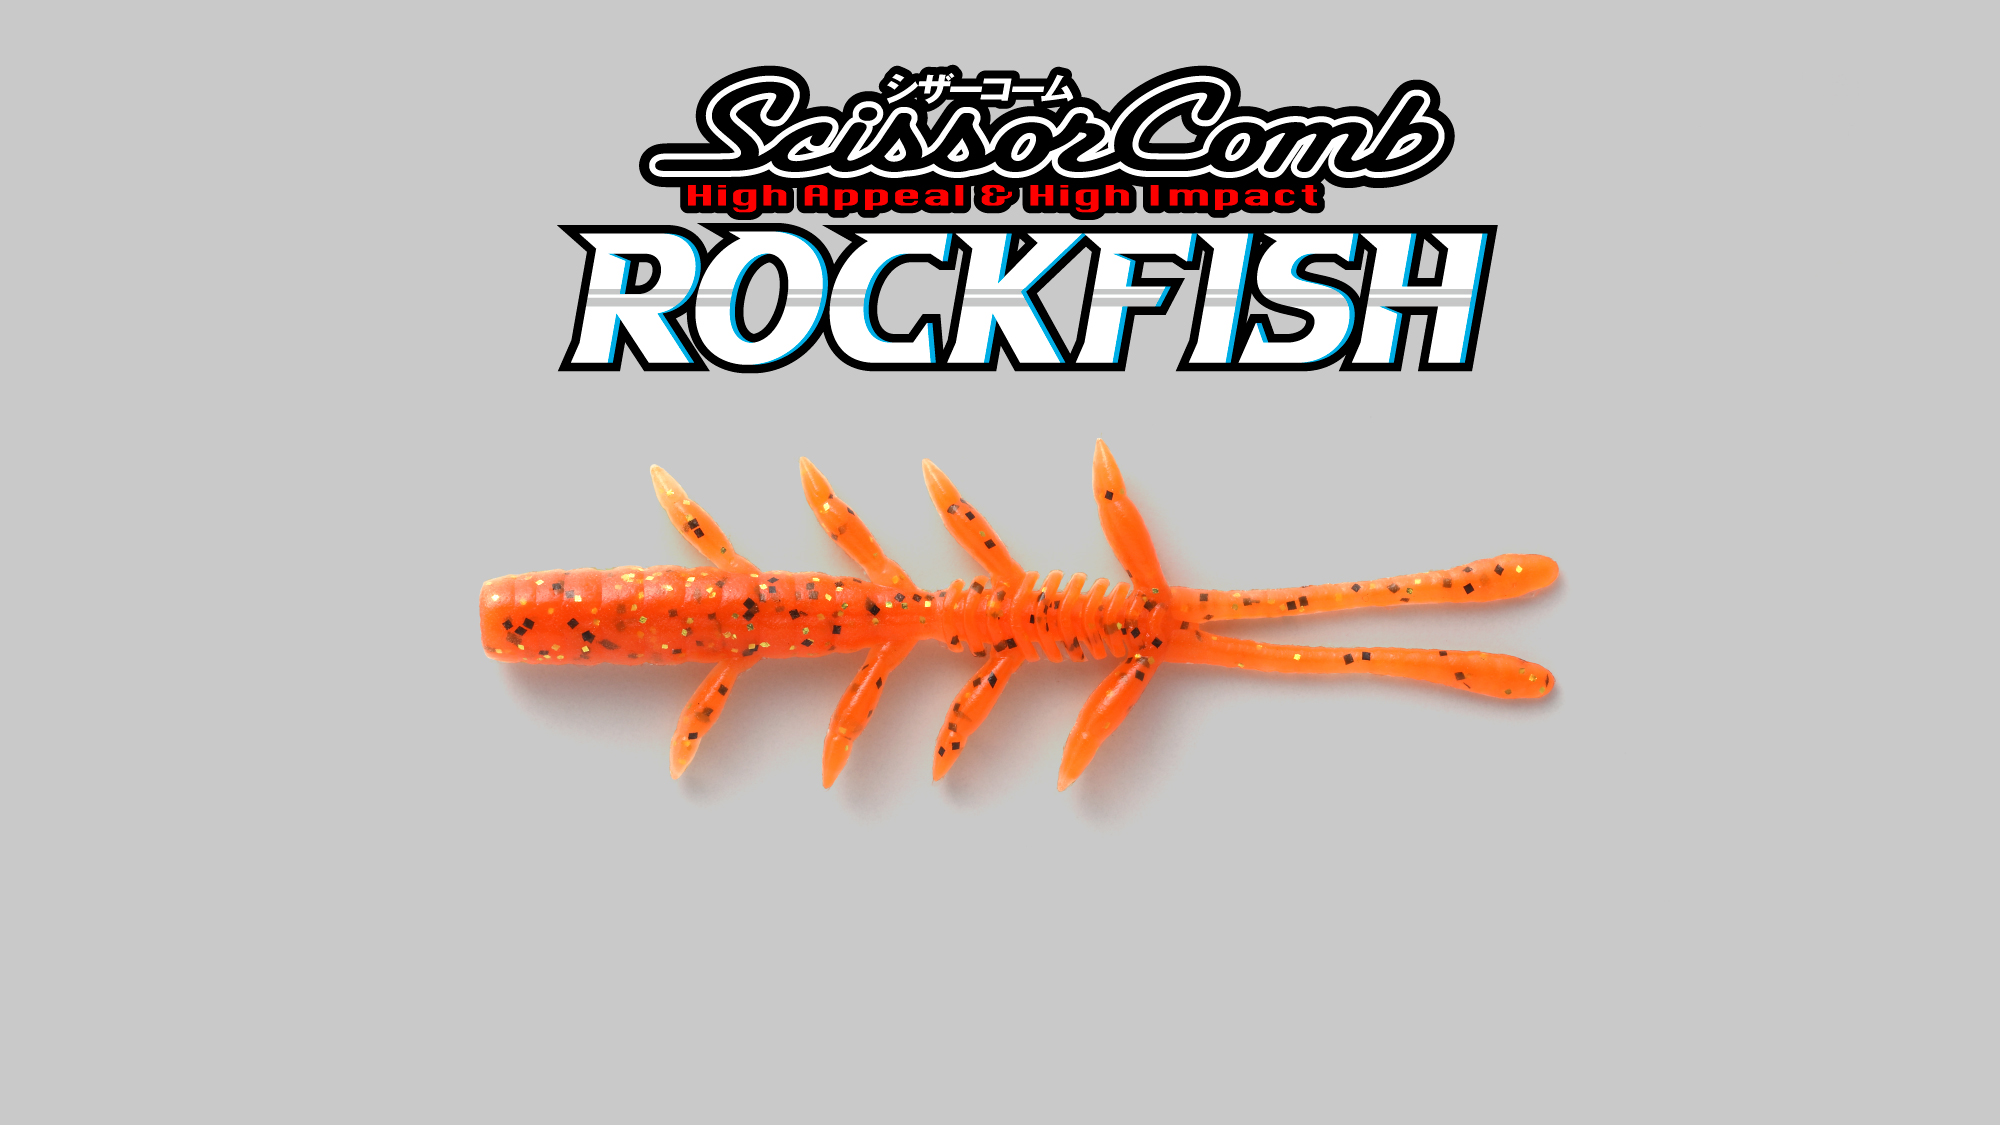 シザーコームロック Scissor Comb Rock Fish / シザーコームロックフィッシュ